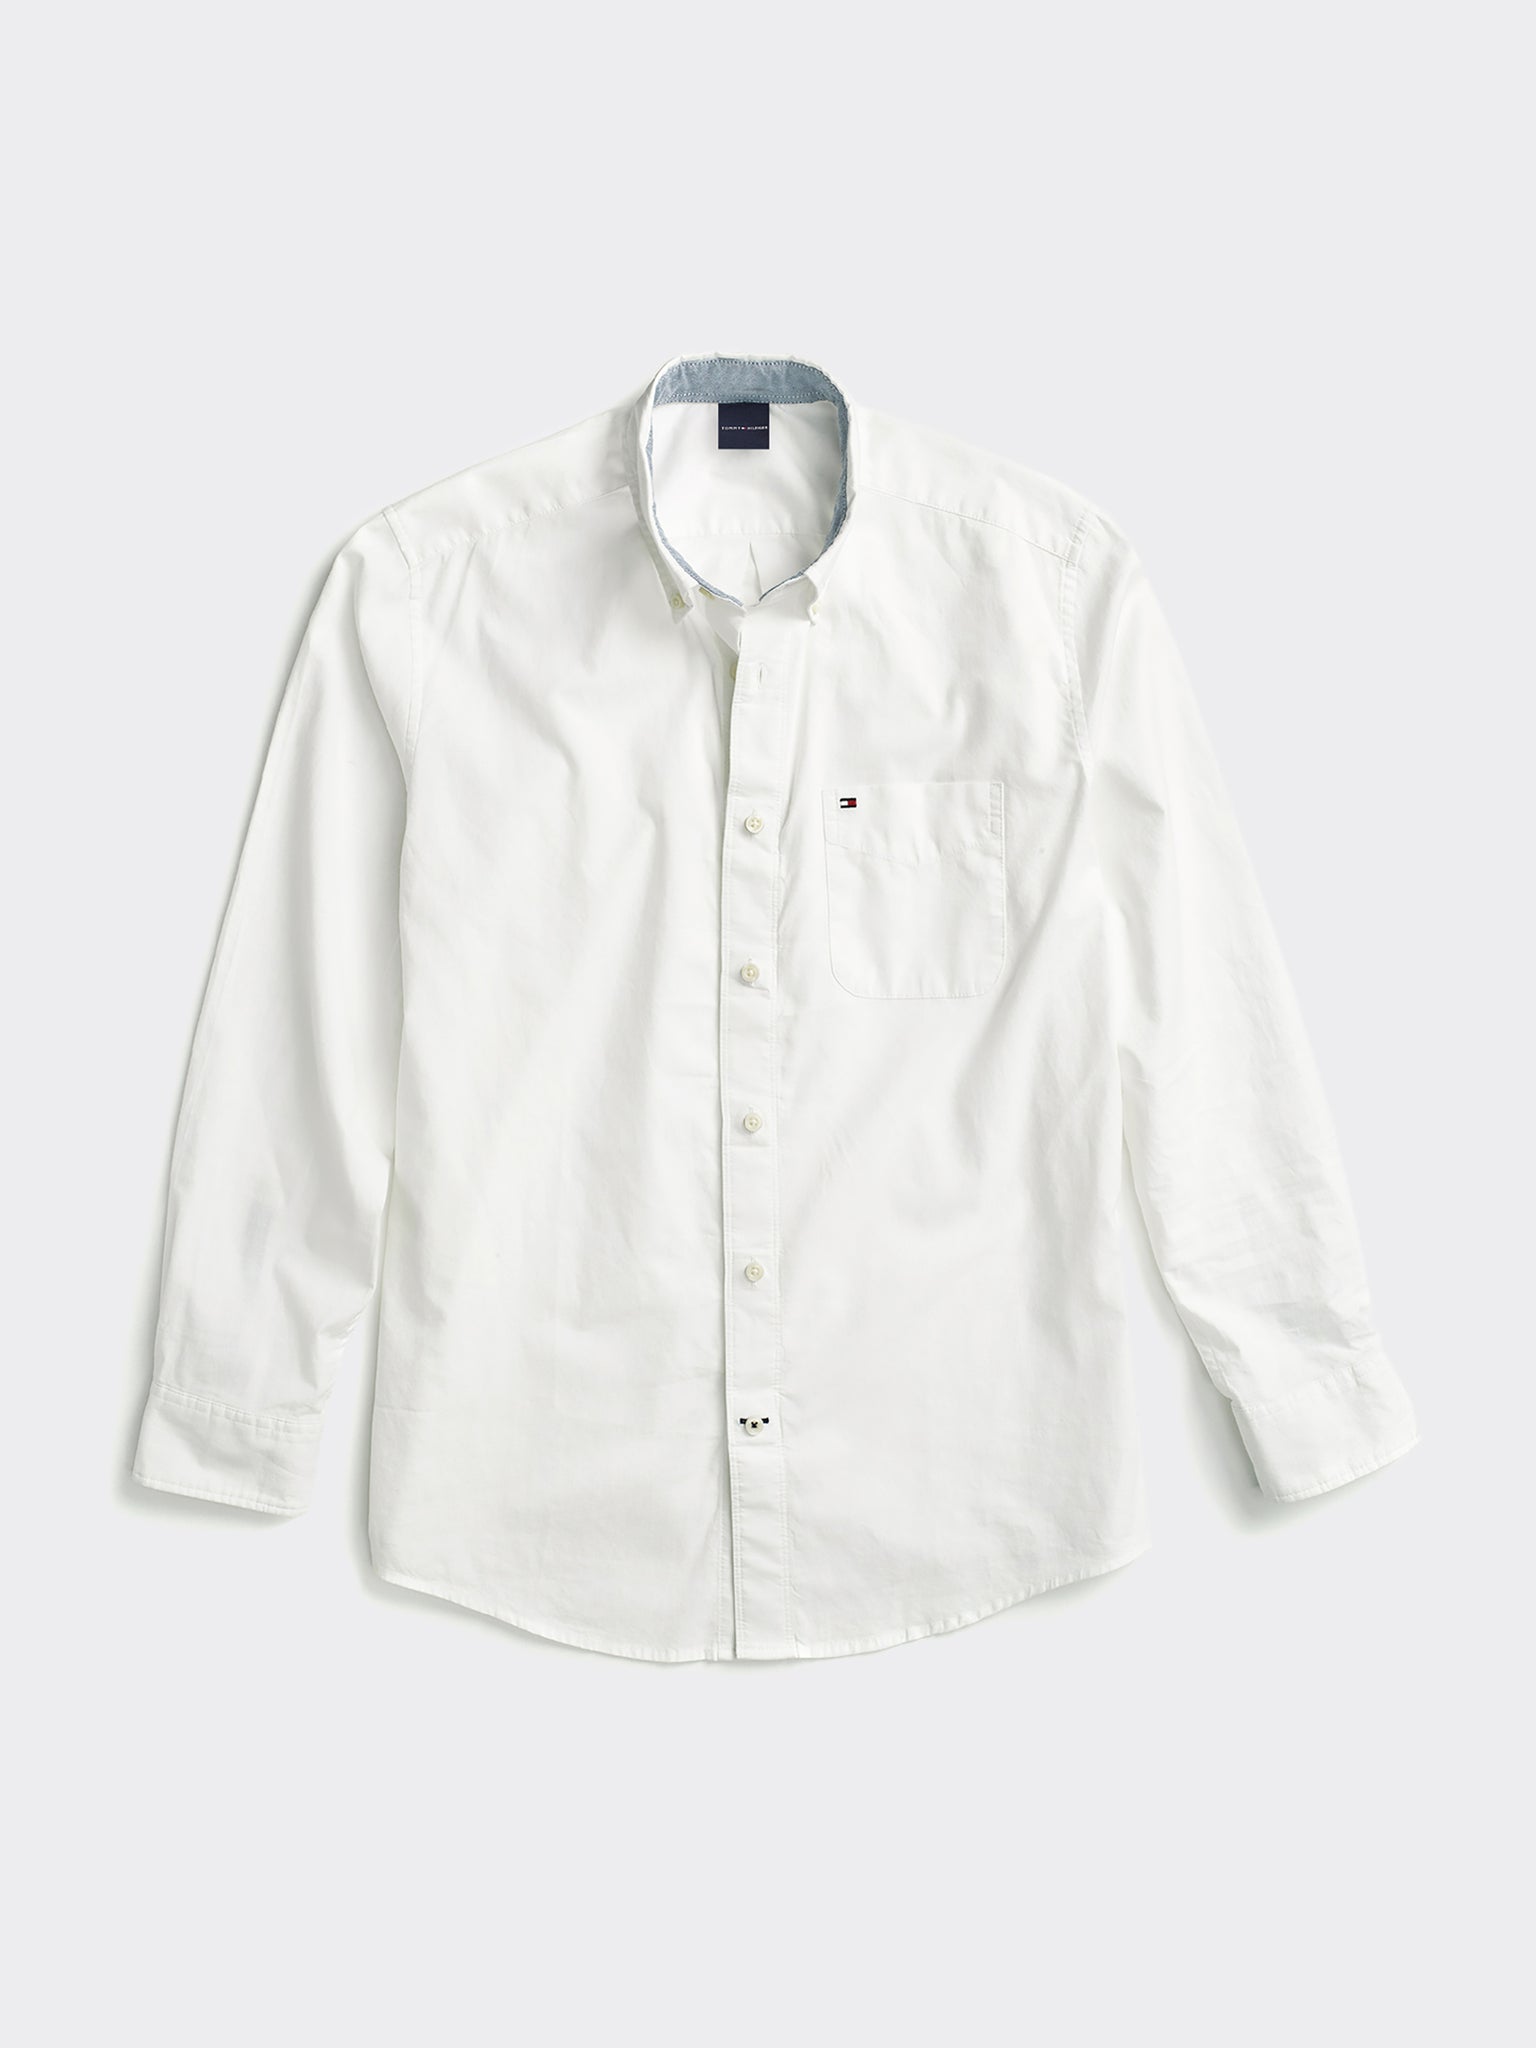 Capote Shirt - White